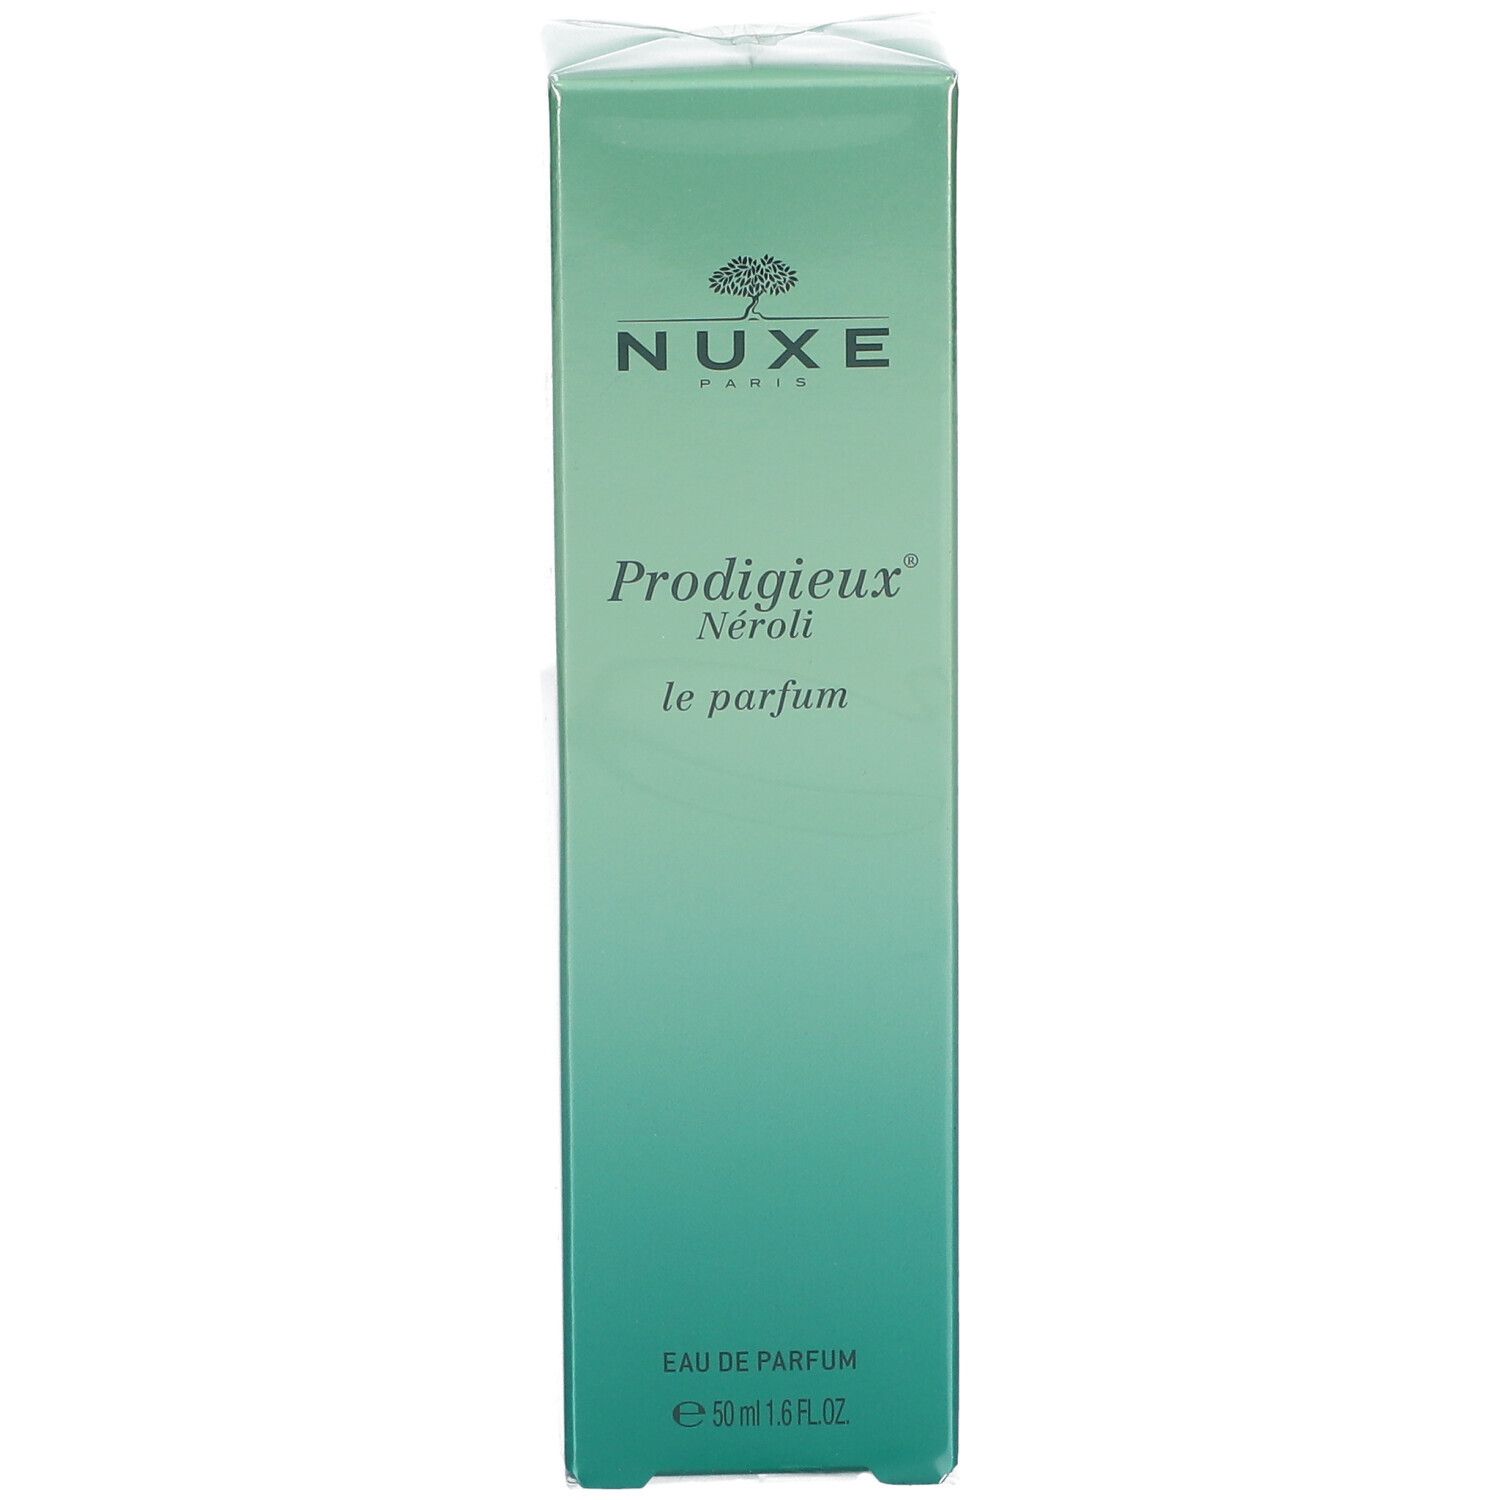 NUXE Prodigieux® Néroli Le Parfum